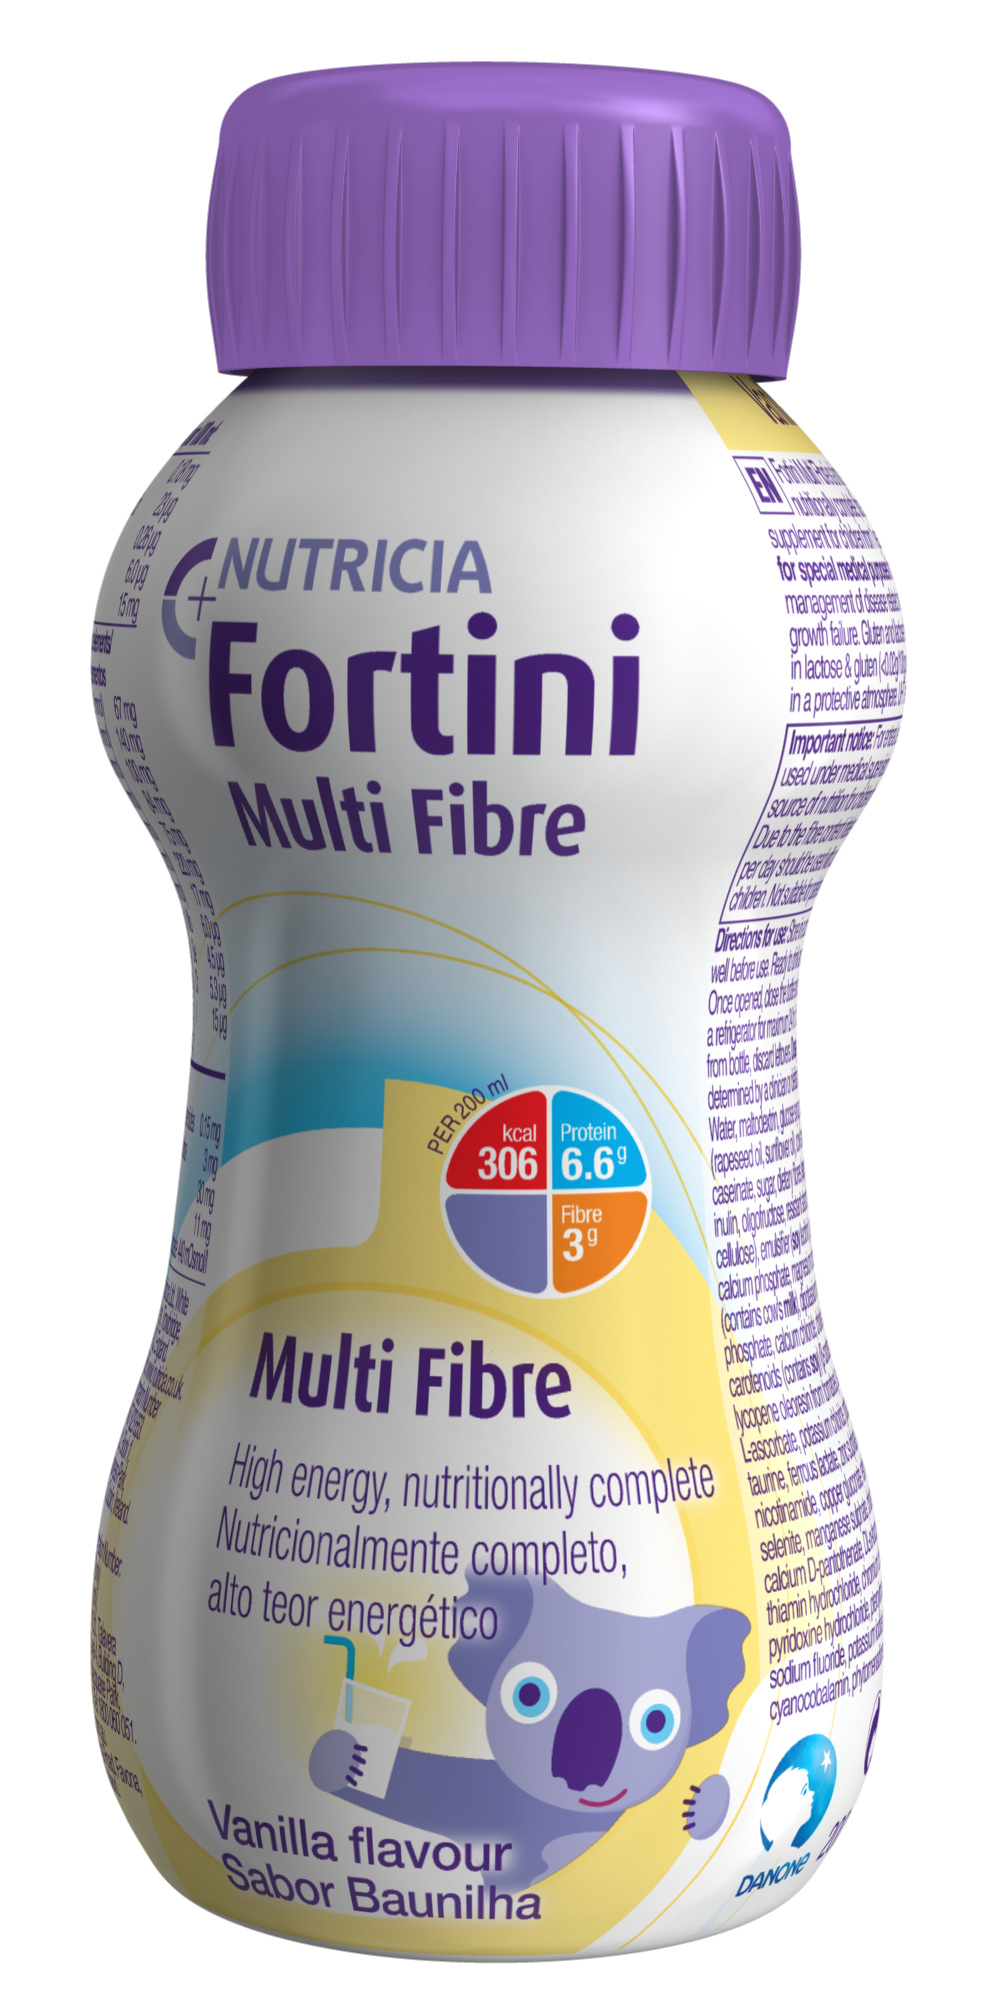 Fortini 1.0 Multi Fibre